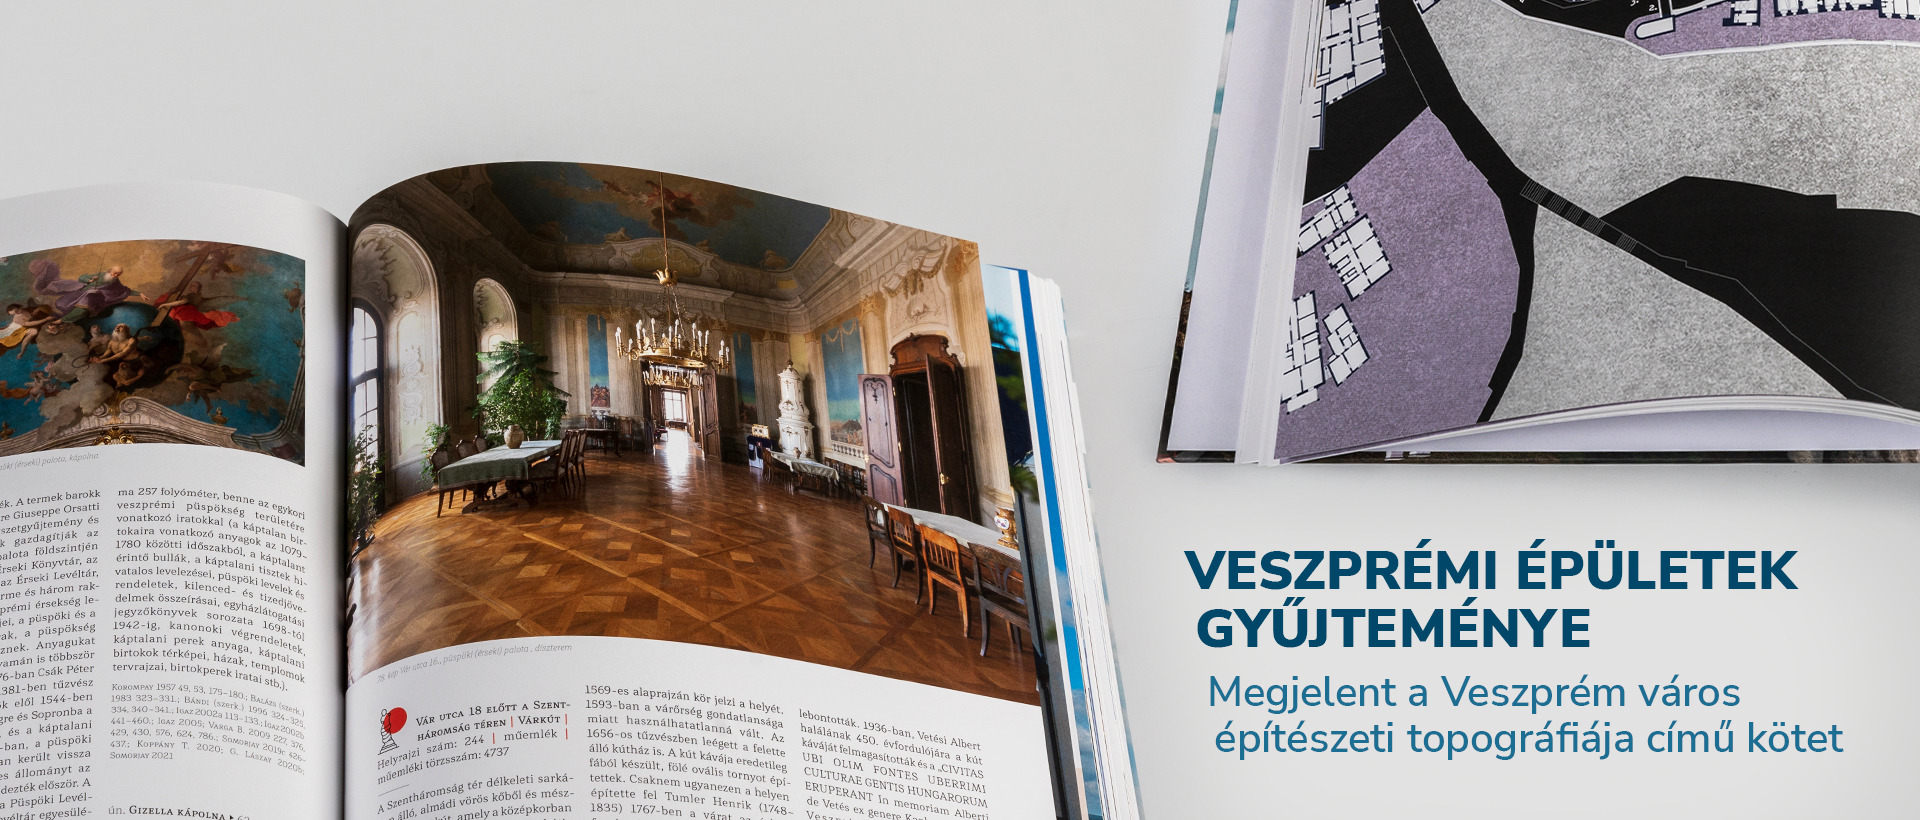 Megjelent a Veszprém város építészeti topográfiája című kötet